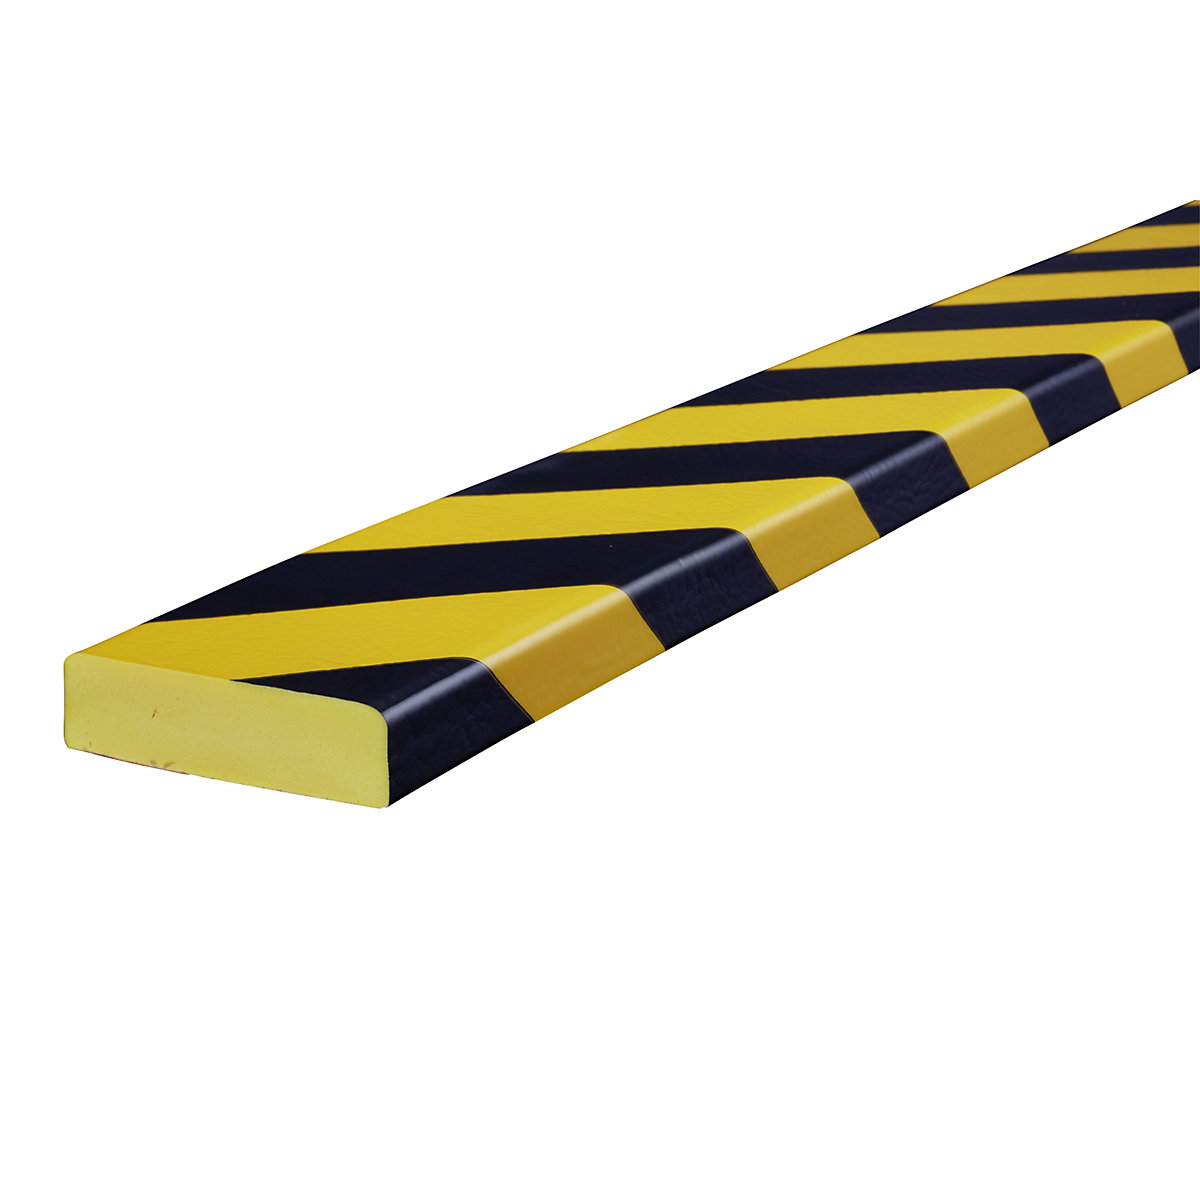 Protección de superficies Knuffi® – SHG, tipo S, pieza de 1 m, amarillo y negro-33